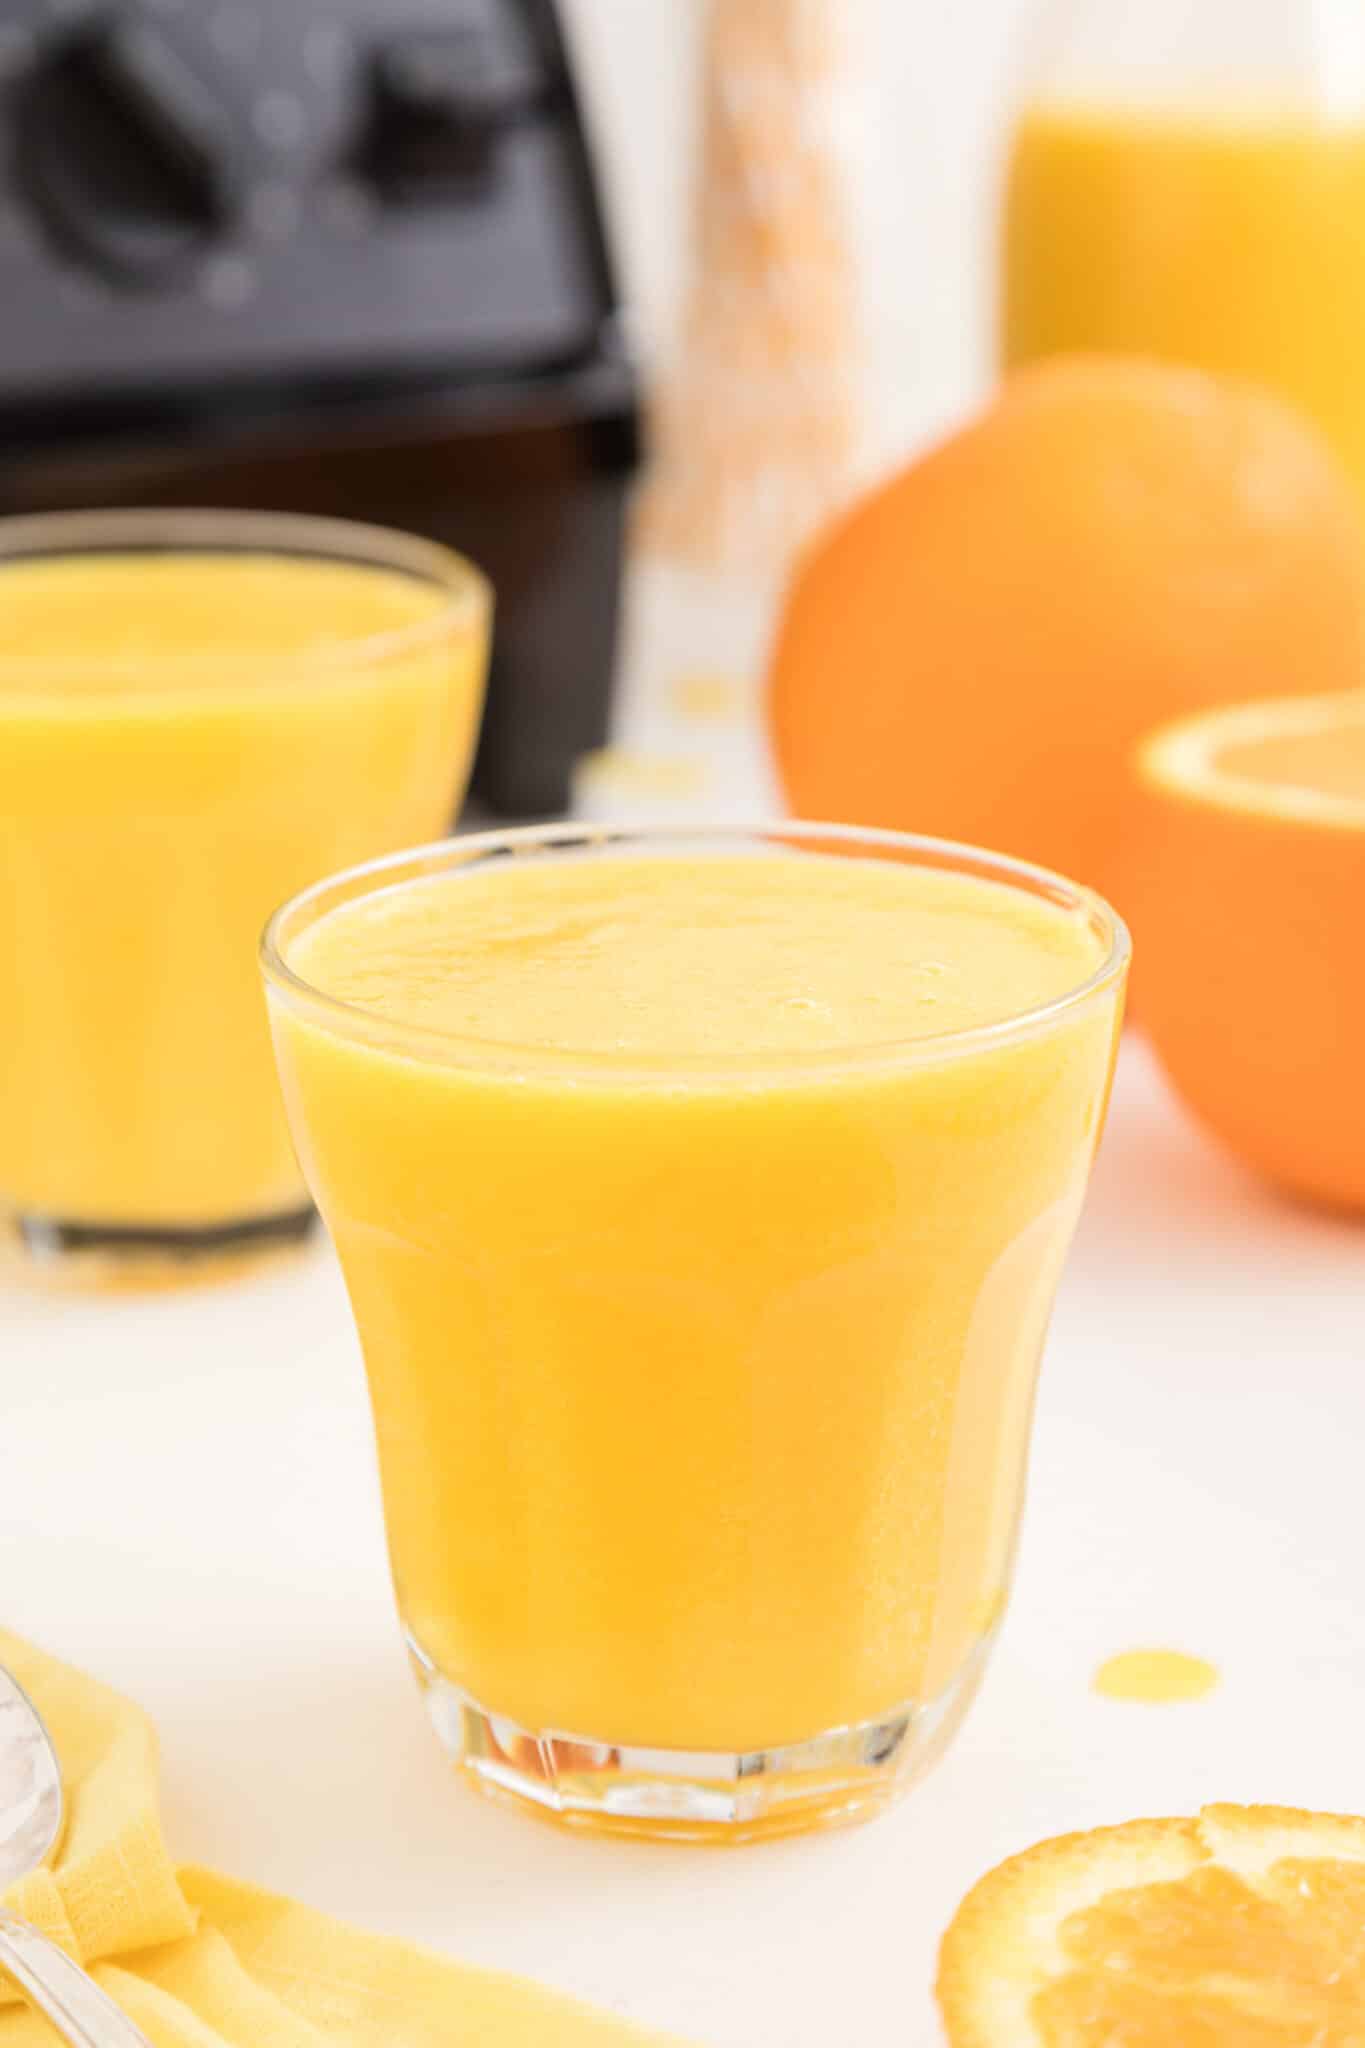 vitamix blended orange juice served in glass.